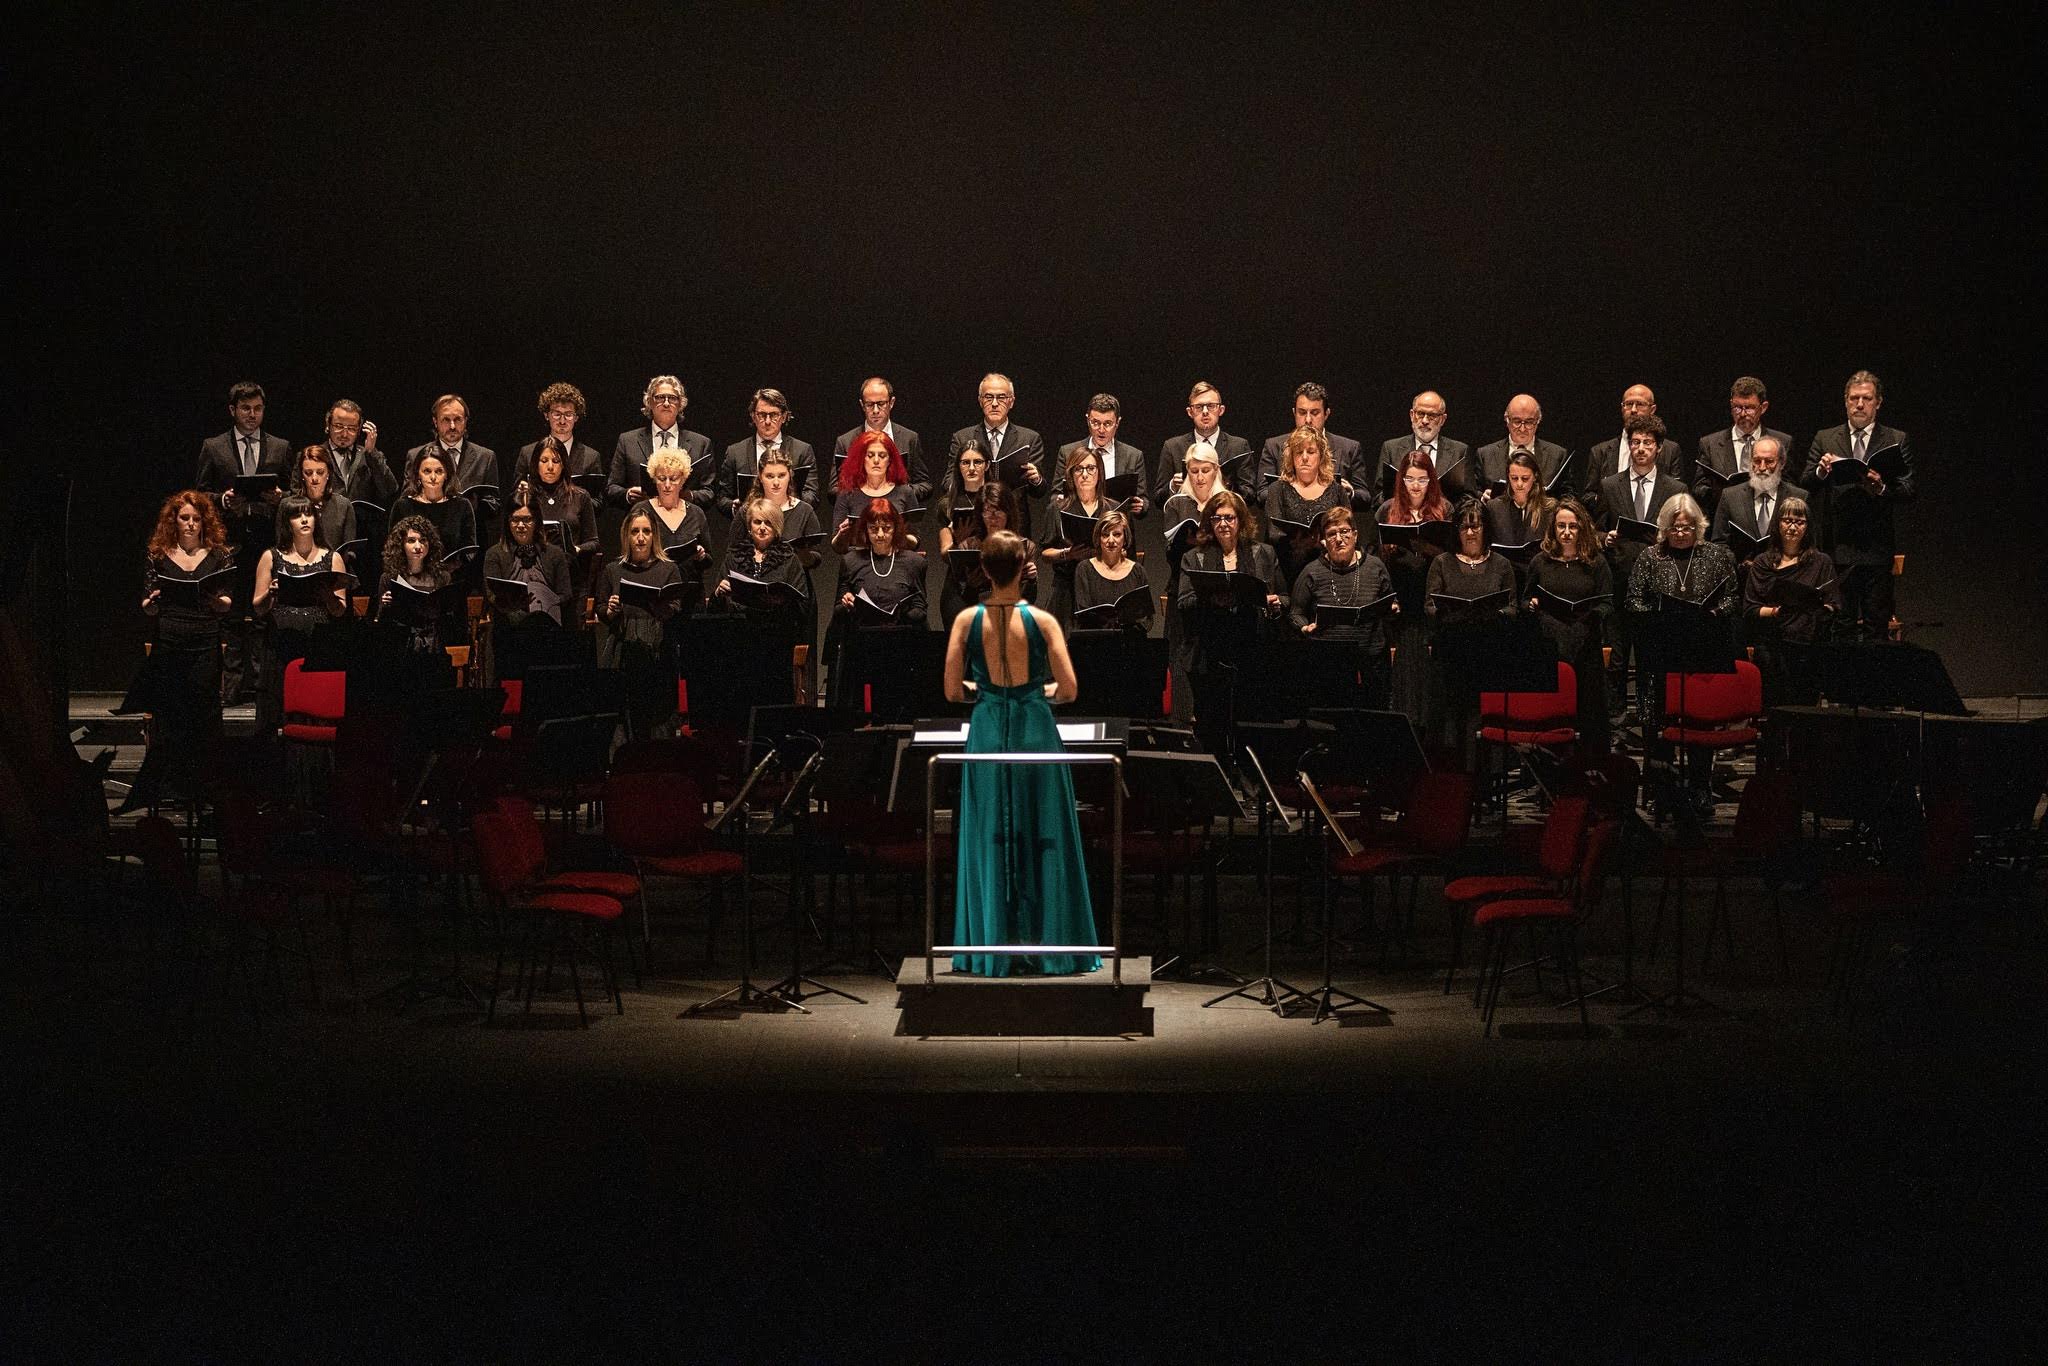 Il Coro del Friuli Venezia Giulia con un nuovo progetto da favola Martedì 30 luglio nella pieve di Gorto “Il Pellegrinaggio della Rosa” di Schubert